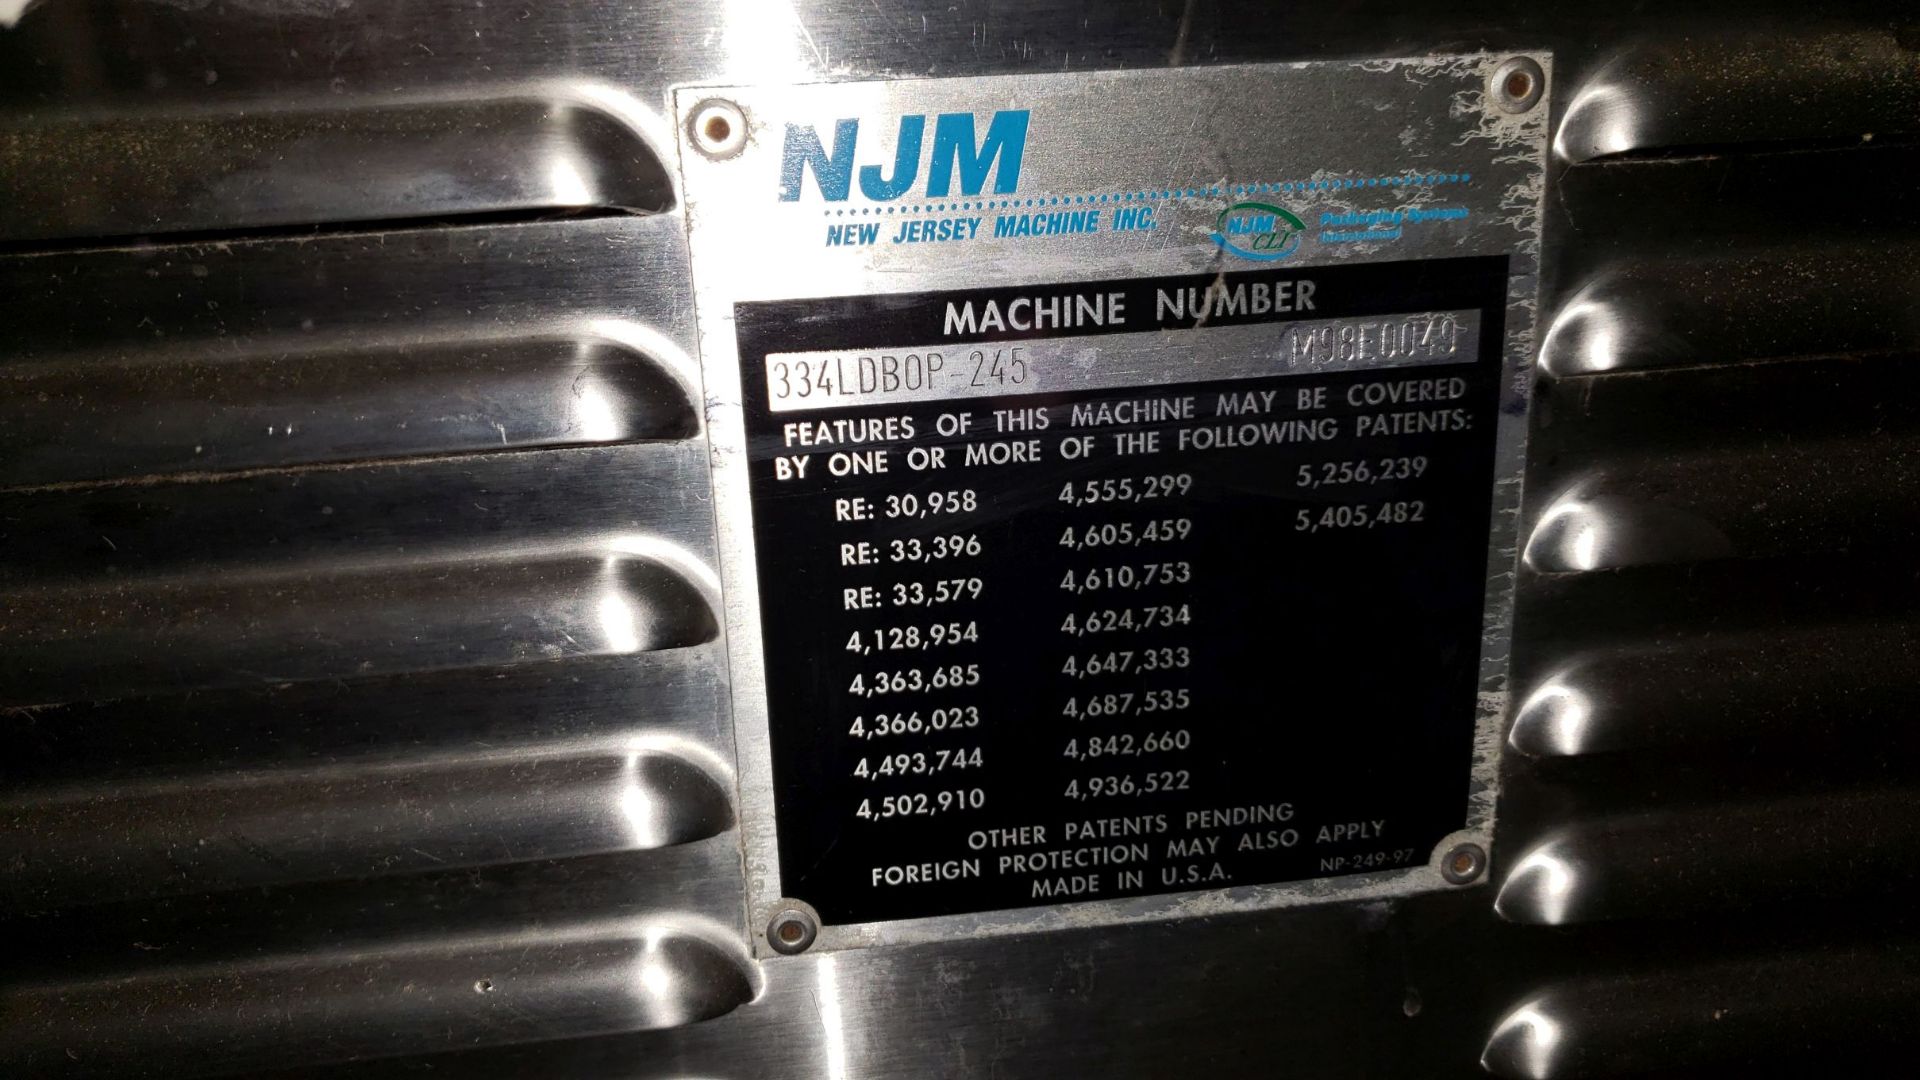 NJM Wrap-Around Labeler, model 334LDBOP245, 230 volt, single phase, with Norwood model Jaguar - Image 9 of 24